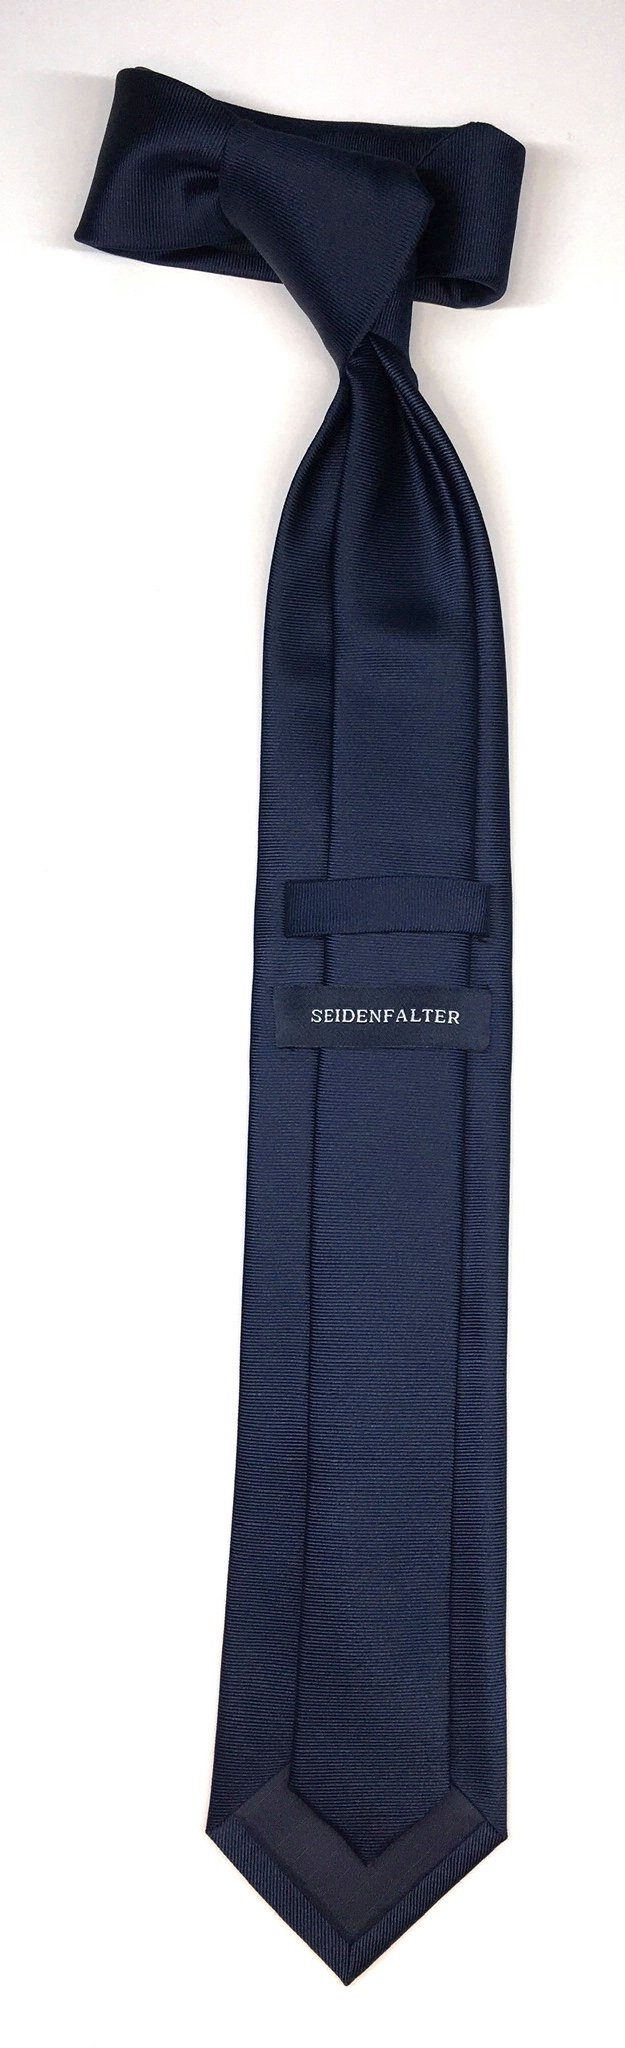 Seidenfalter Krawatte Seidenfalter 6cm Marine Krawatte Uni